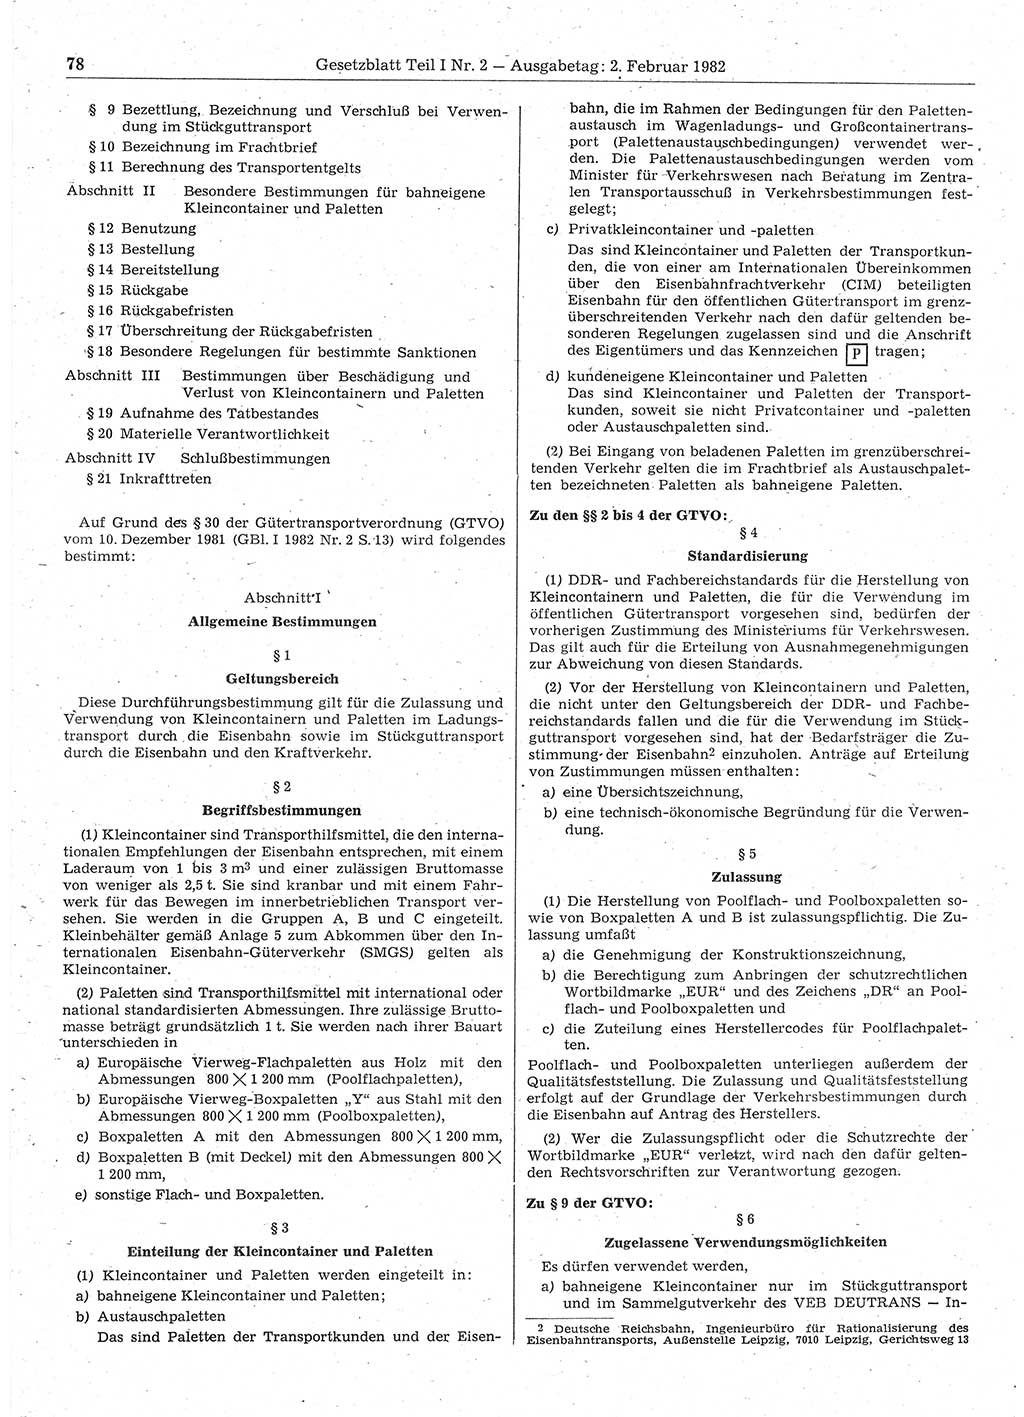 Gesetzblatt (GBl.) der Deutschen Demokratischen Republik (DDR) Teil Ⅰ 1982, Seite 78 (GBl. DDR Ⅰ 1982, S. 78)